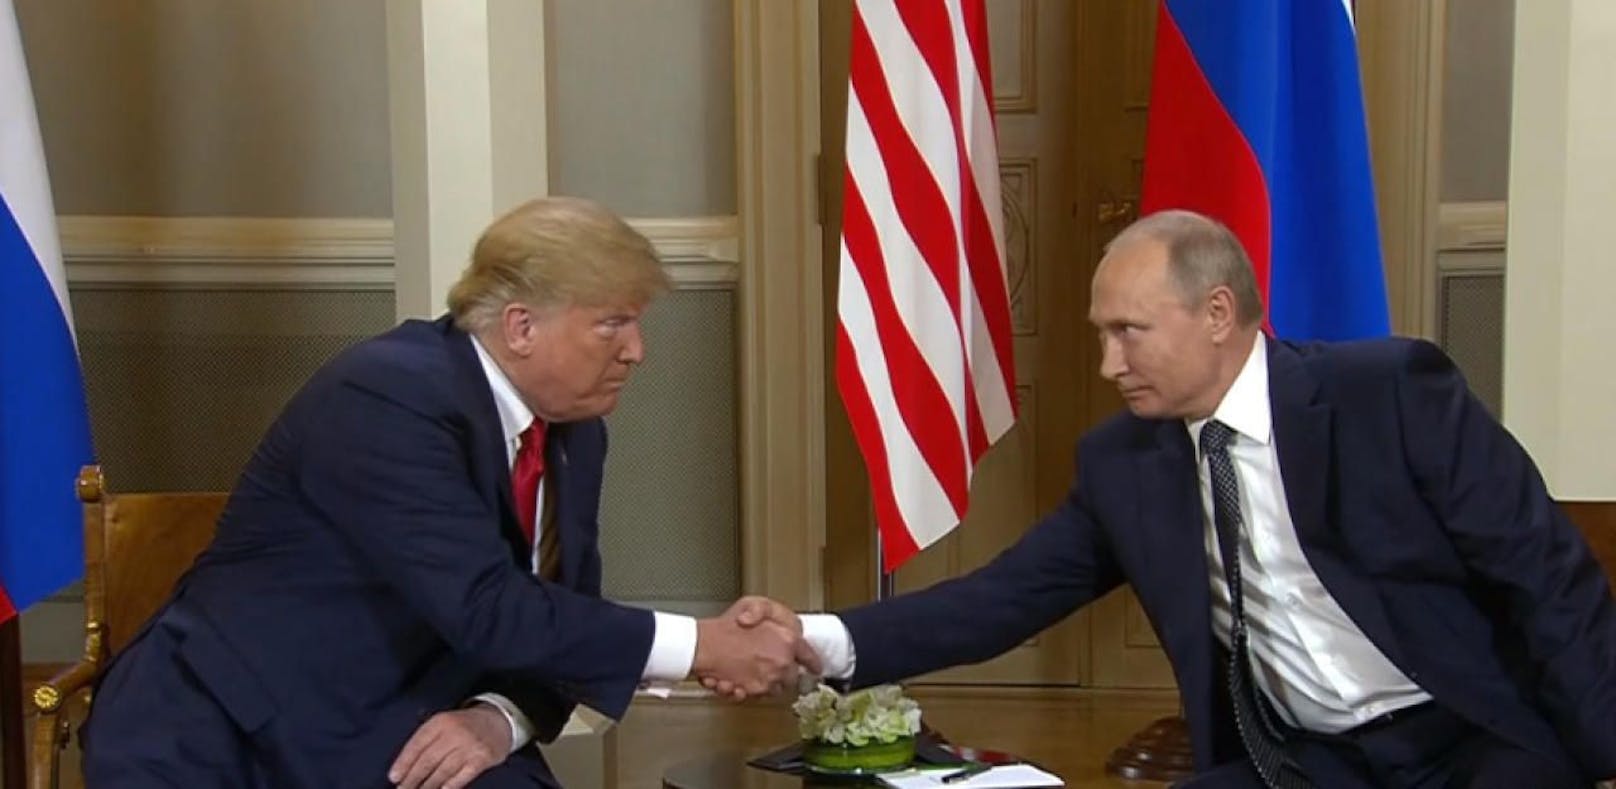 Trump gratuliert Putin zur gelungenen WM